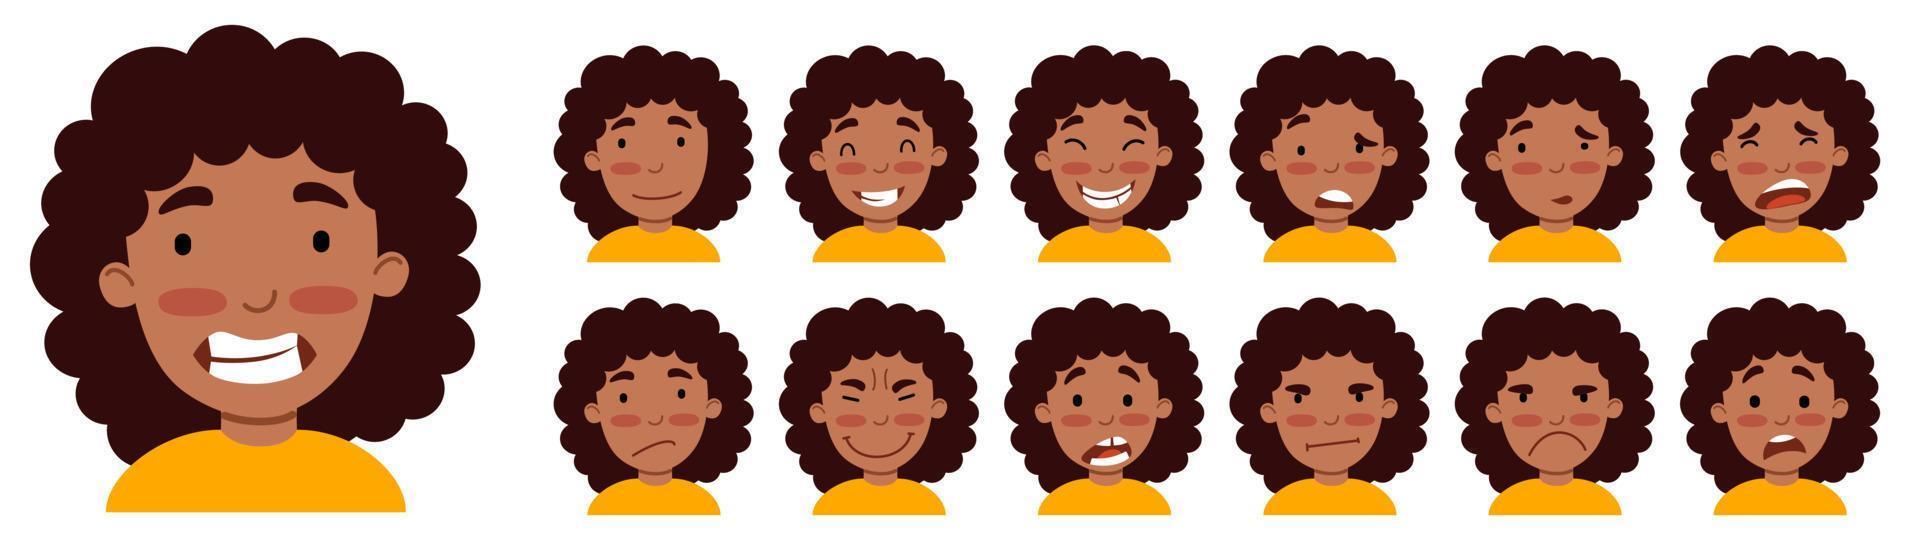 um conjunto de emoções femininas. uma garota afro-americana é um avatar. vetor